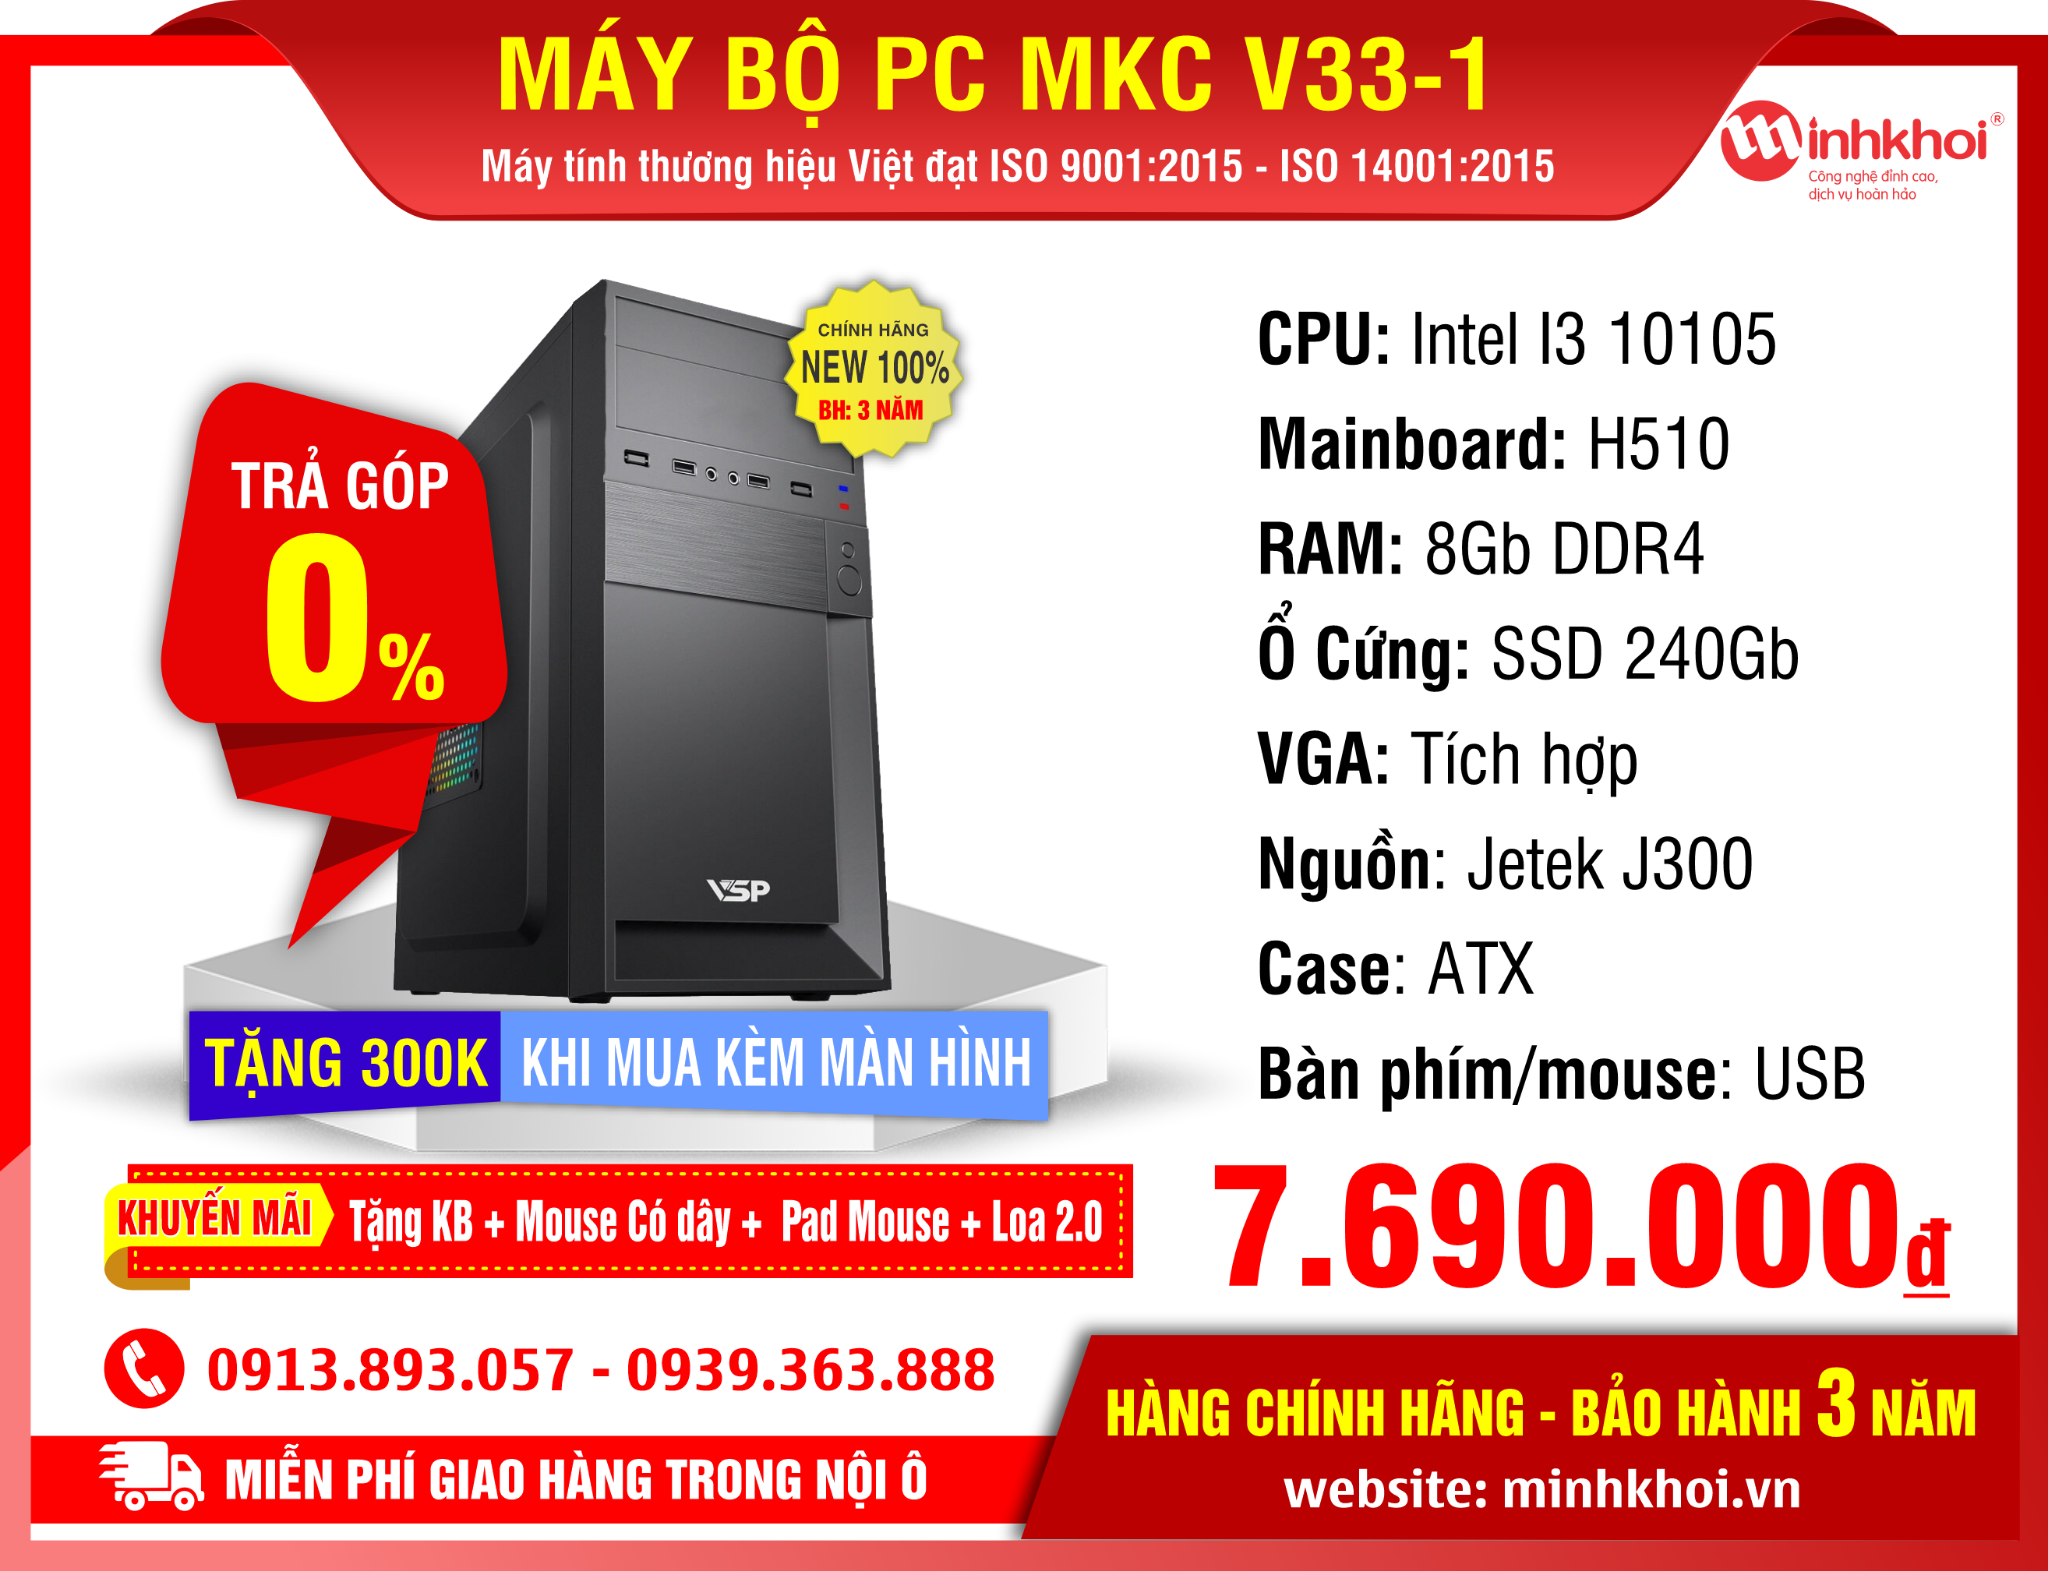 MÁY BỘ PC MKC V33-1